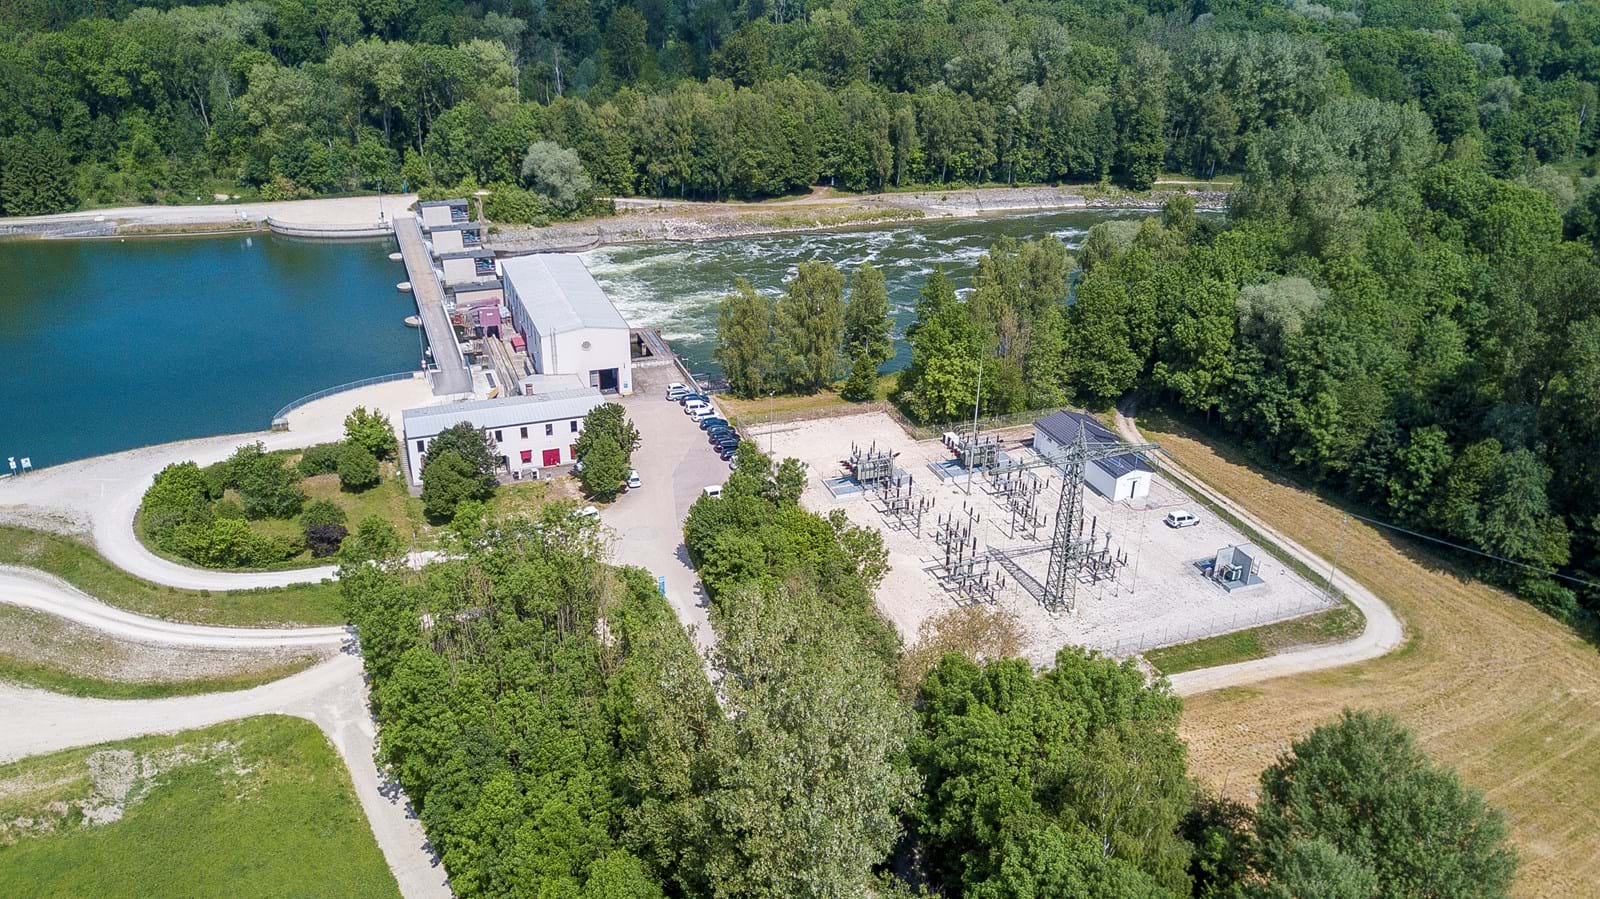 Das Wasserkraftwerk Feldheim am Lech spielte eine zentrale Rolle bei dem Feldversuch.